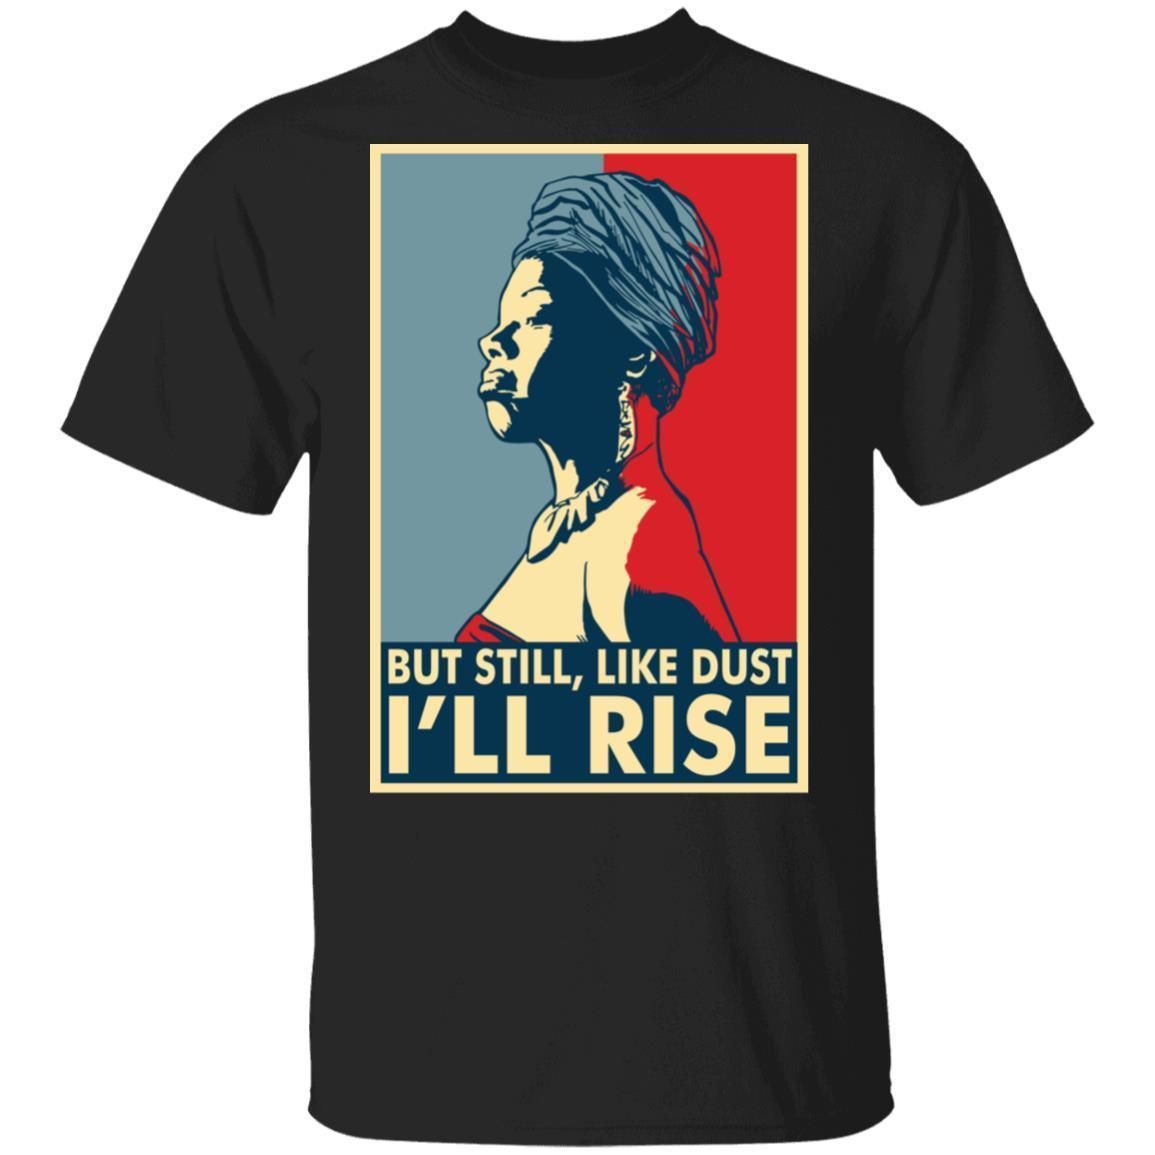 I'll Rise T-shirt